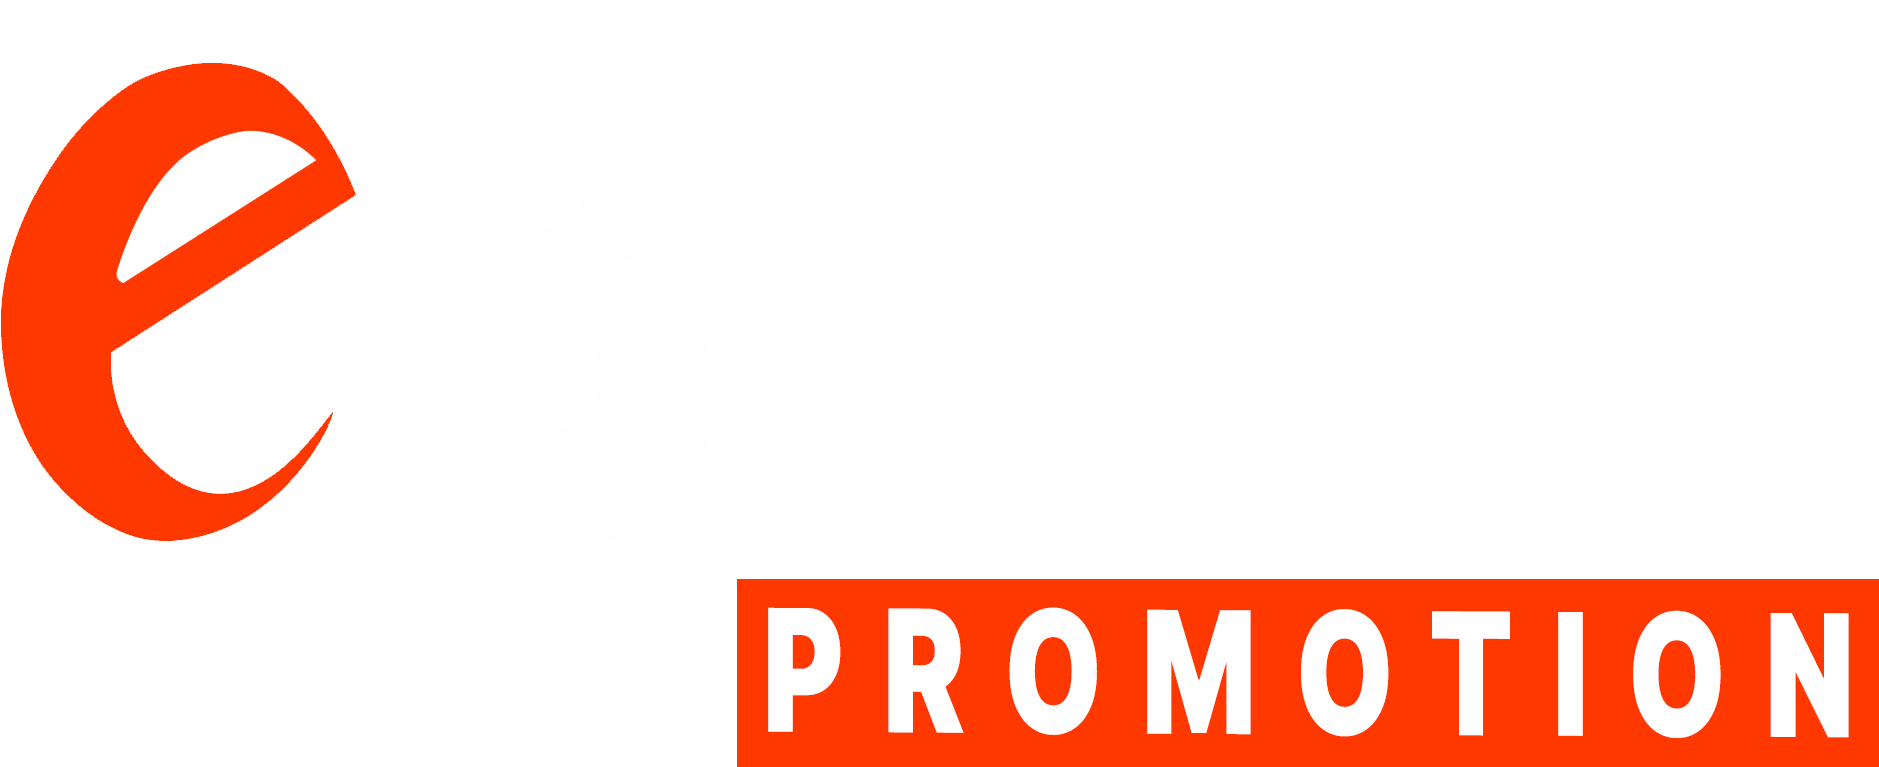 ebrand promotion logo